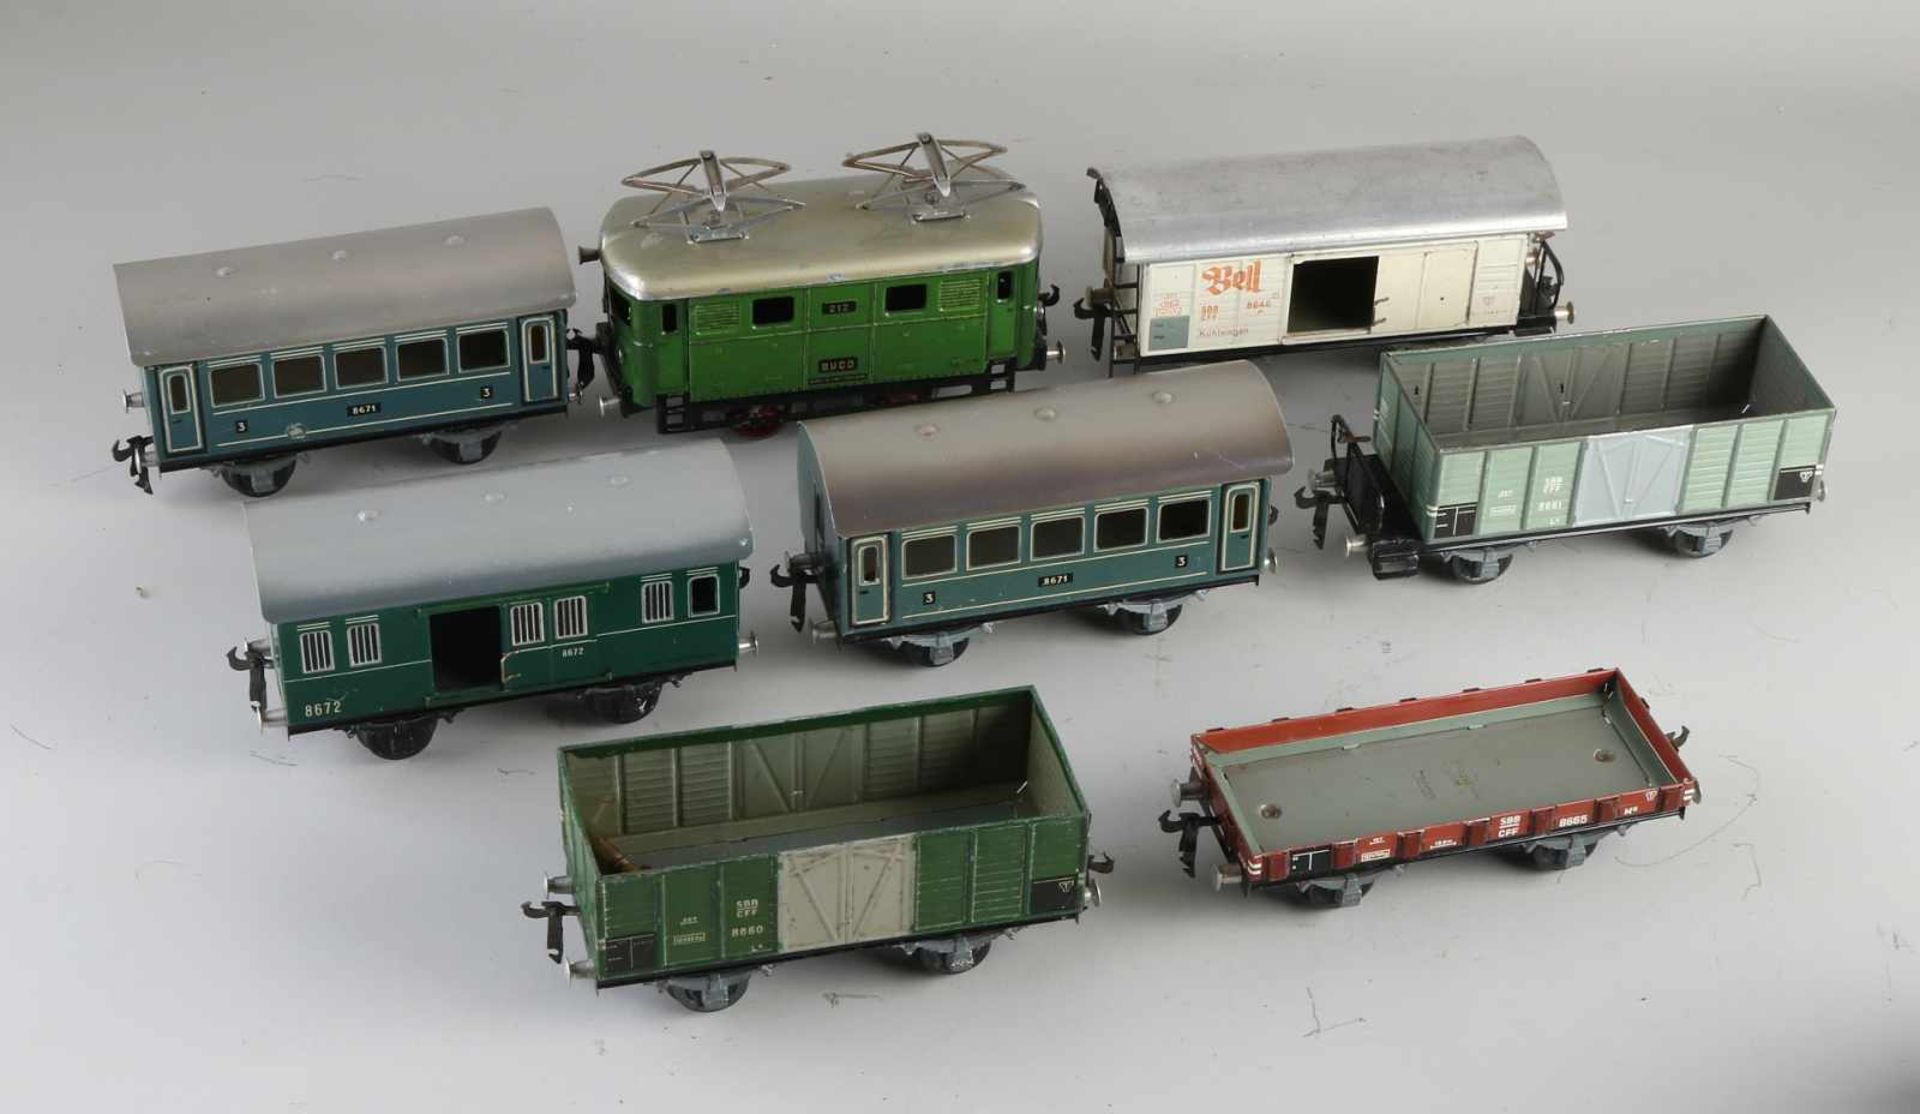 Schweizer Buco Blechspielzeugzug mit sieben Wagen. Gespielt. Um 1930 - 1940. Größe: 16 - 18 cm. In